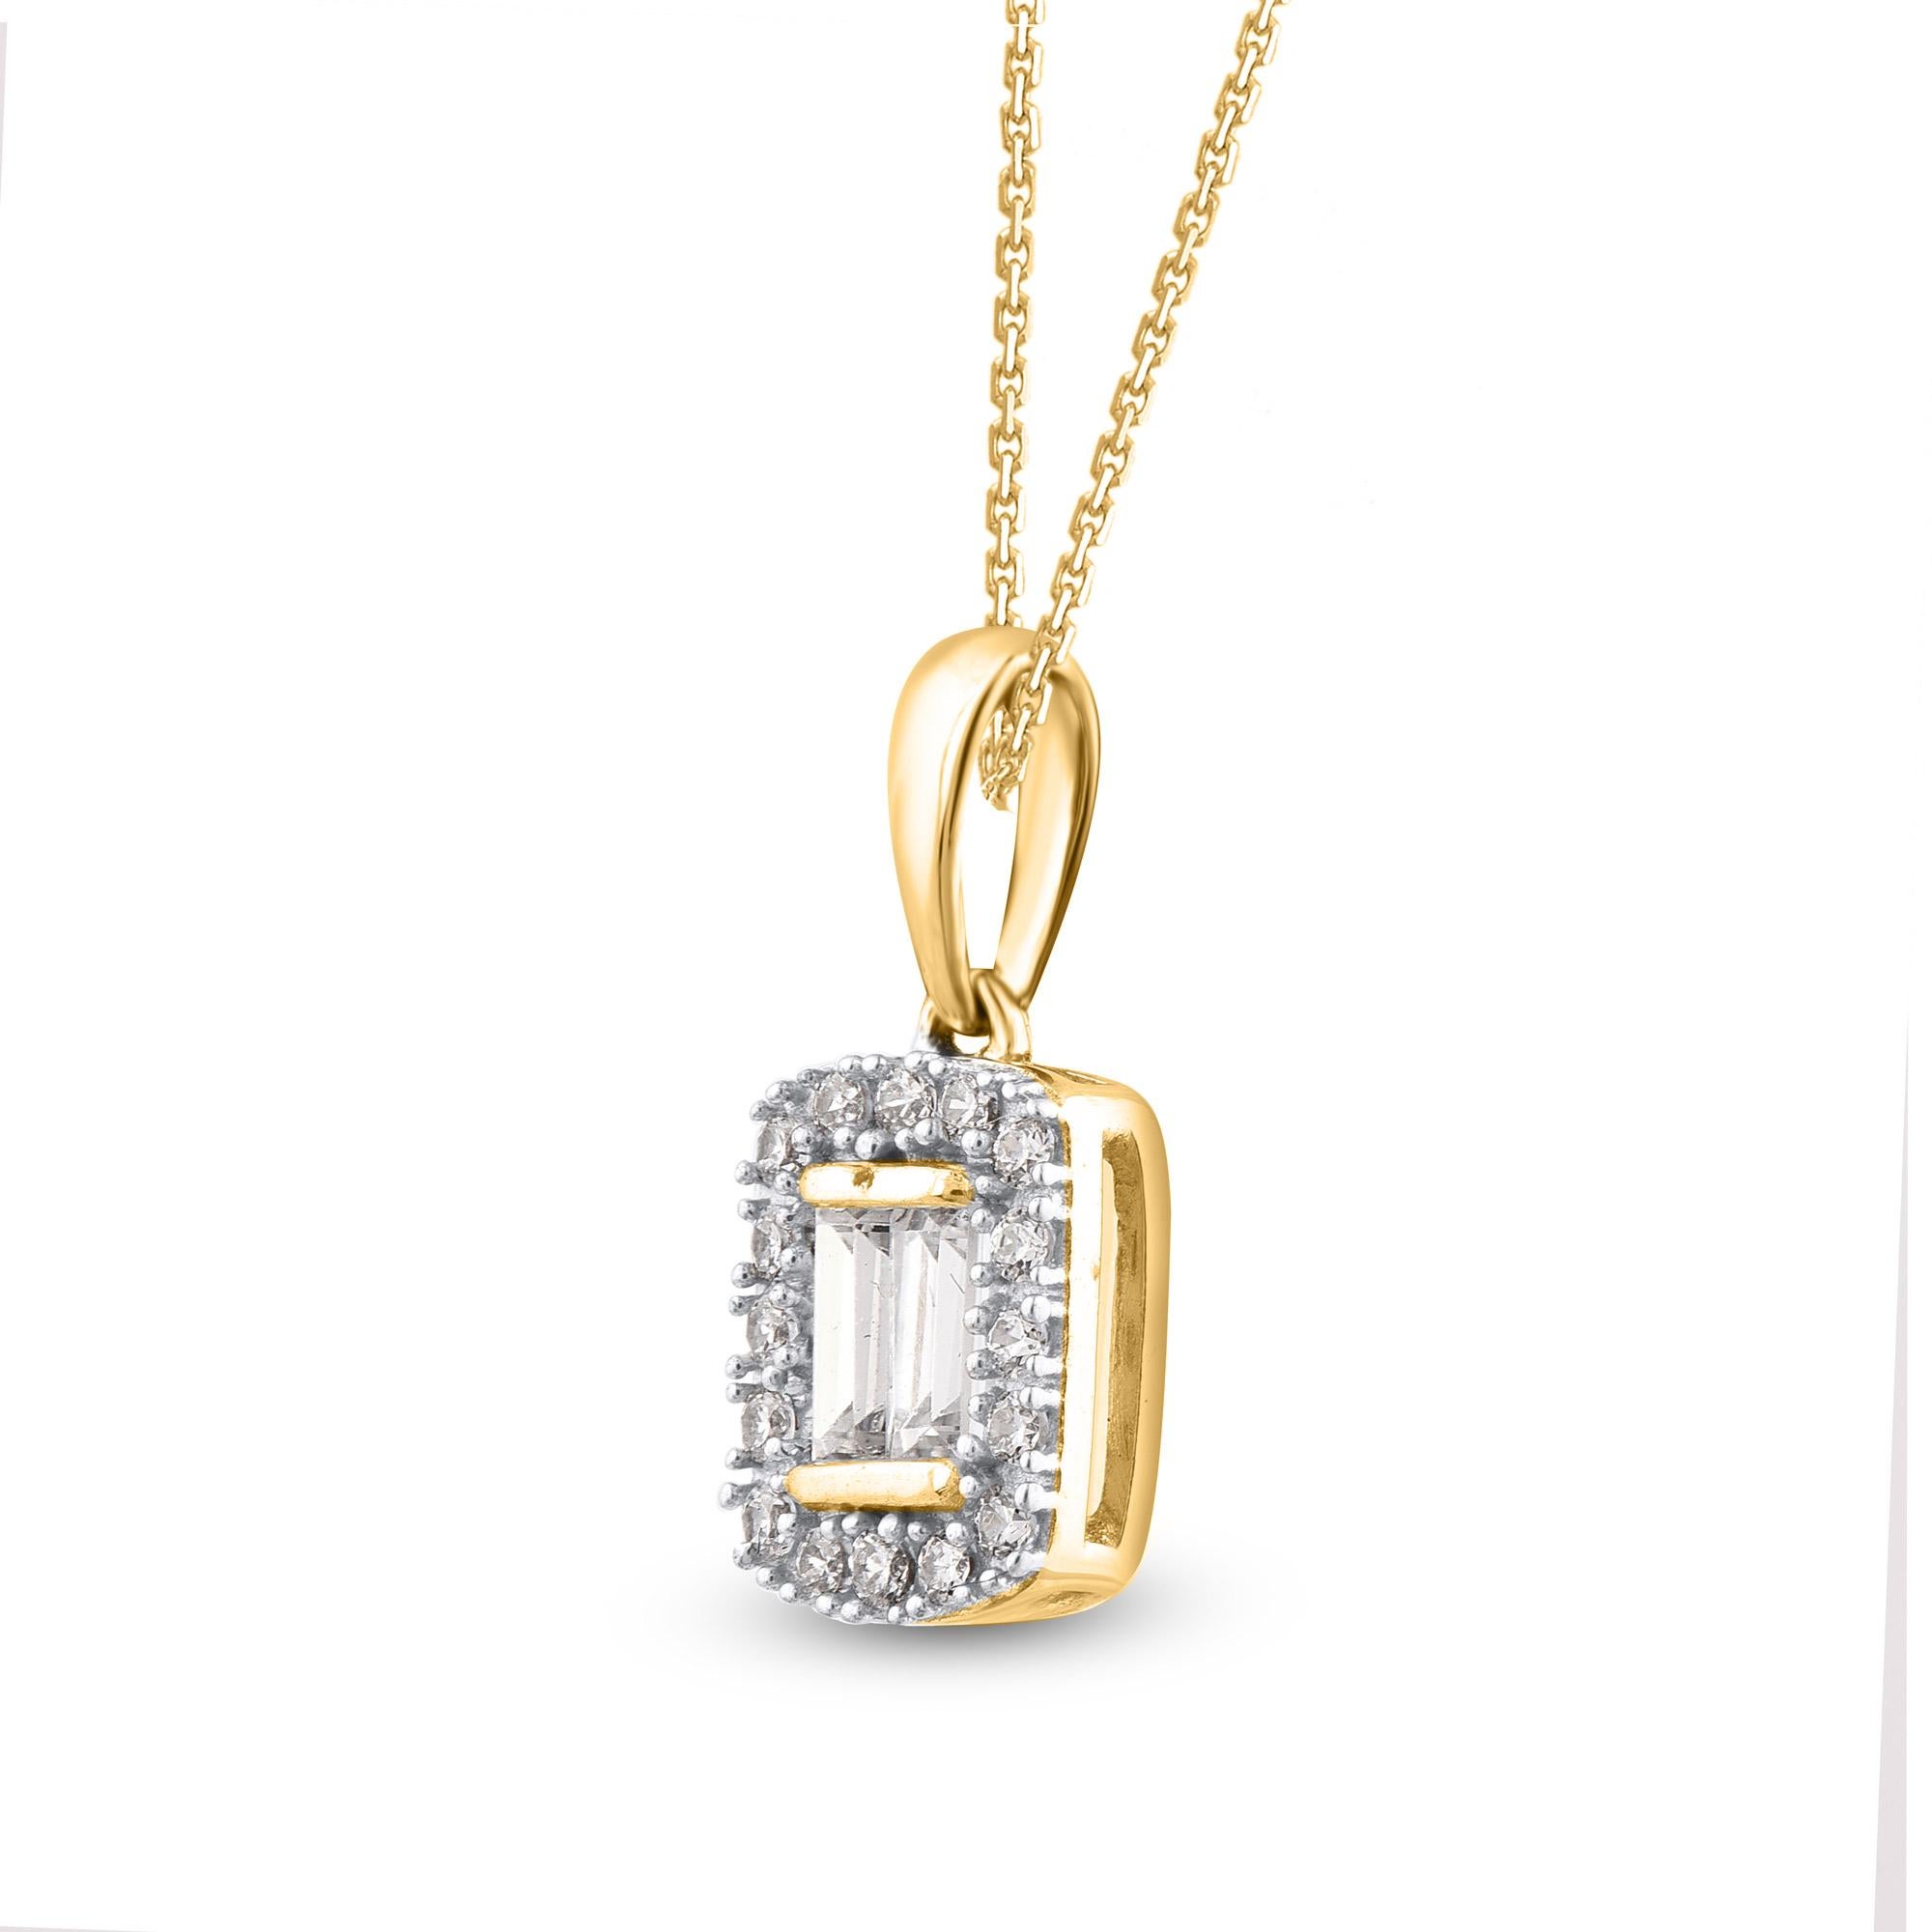 Ce magnifique collier pendentif coussin est orné de 19 diamants naturels de taille brillant et de taille baguette en serti clos et en serti-canal. Le poids total des diamants de ce pendentif est de 0,20 carats. Tous les diamants sont de couleur H-I